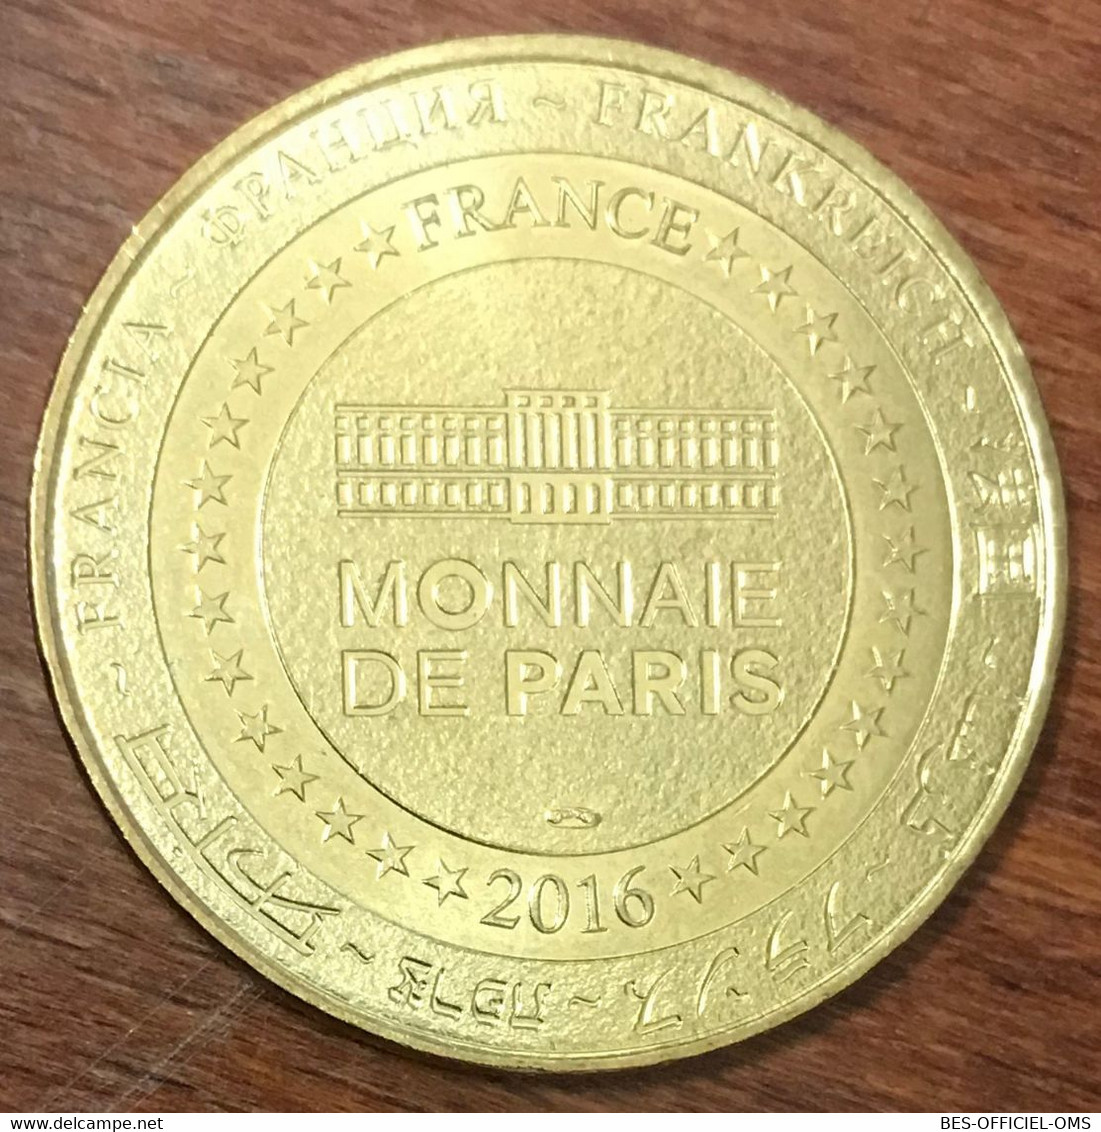 08 ROCROY 1555 VILLE ÉTOILE MDP 2016 MÉDAILLE MONNAIE DE PARIS JETON TOURISTIQUE MEDALS COINS TOKENS - 2016